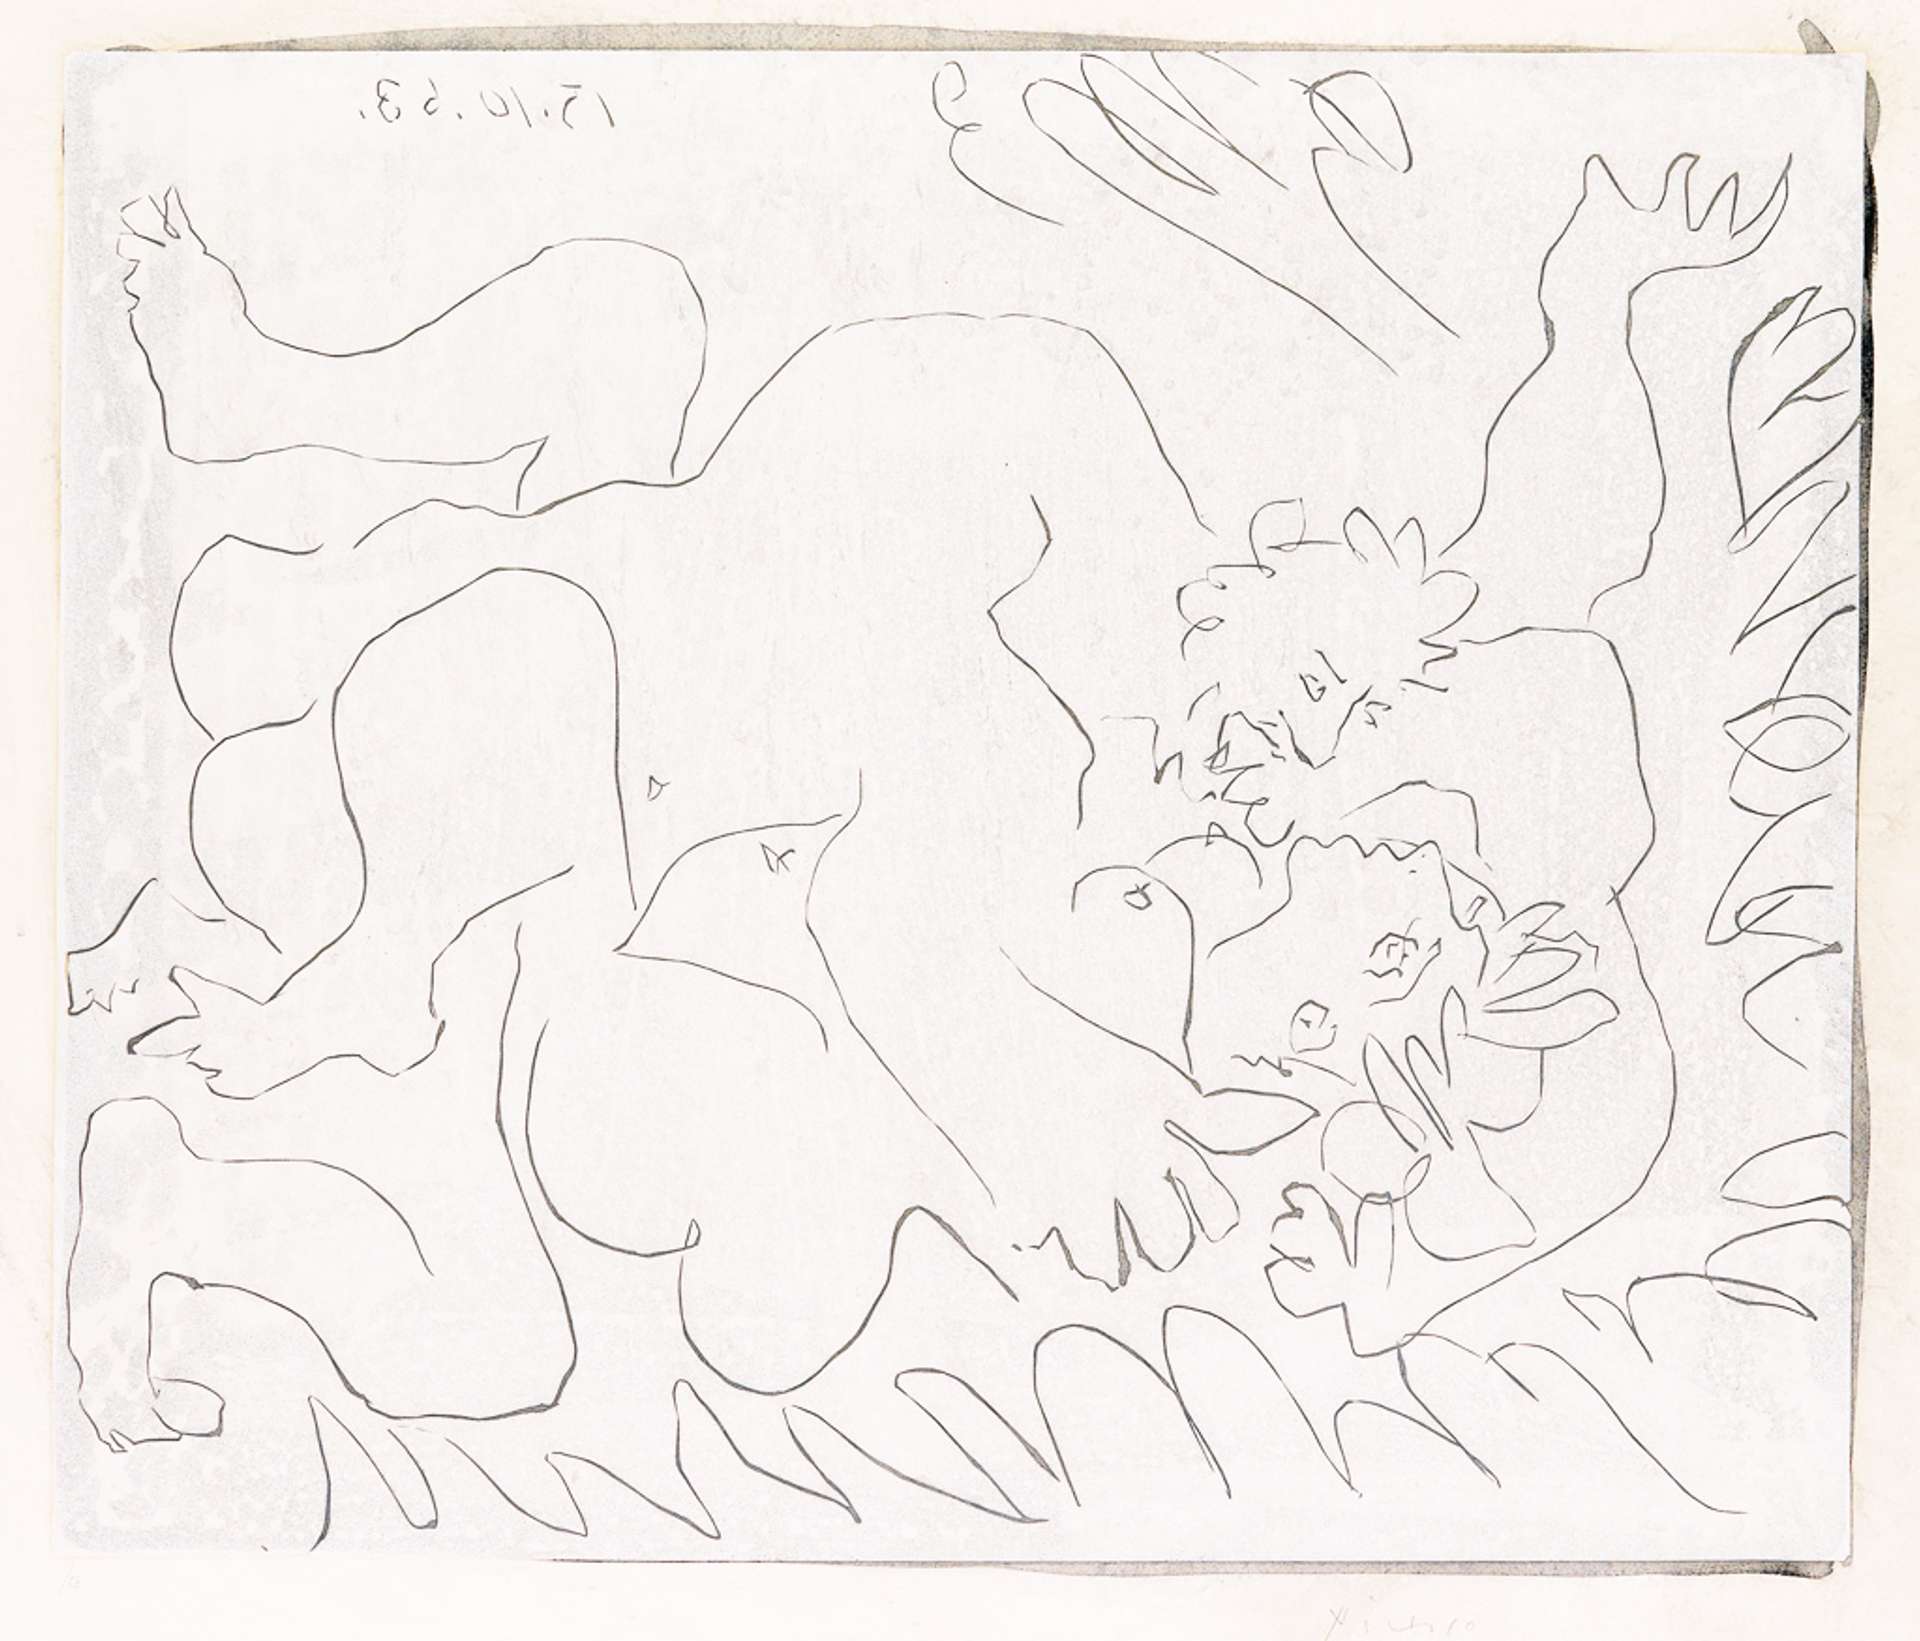 Pablo Picasso: Treinte - Signed Print